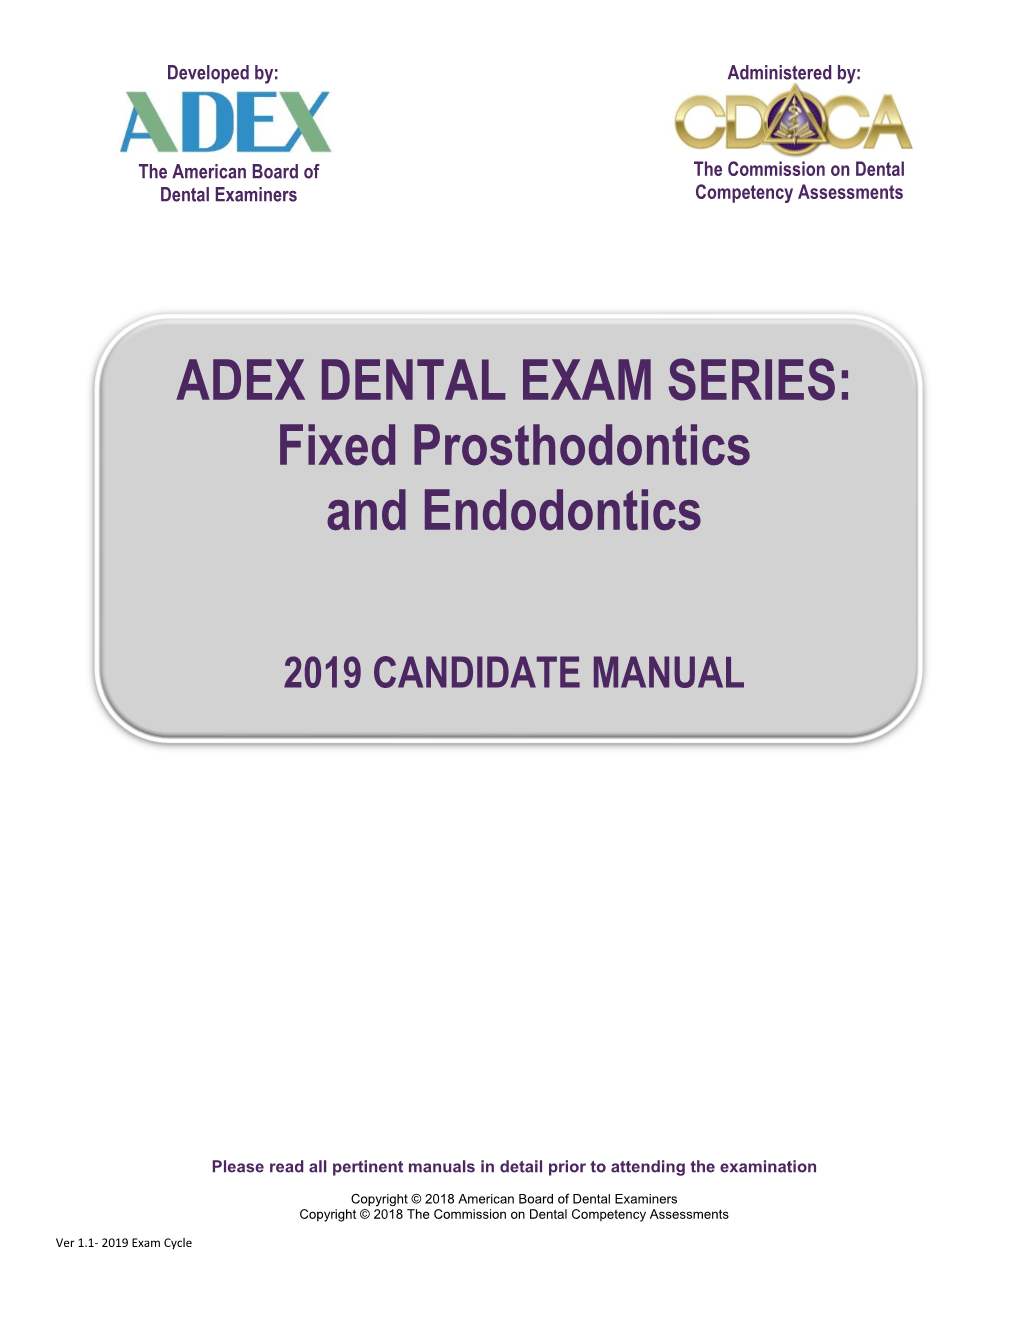 ADEX DENTAL EXAM SERIES: Fixed Prosthodontics and Endodontics